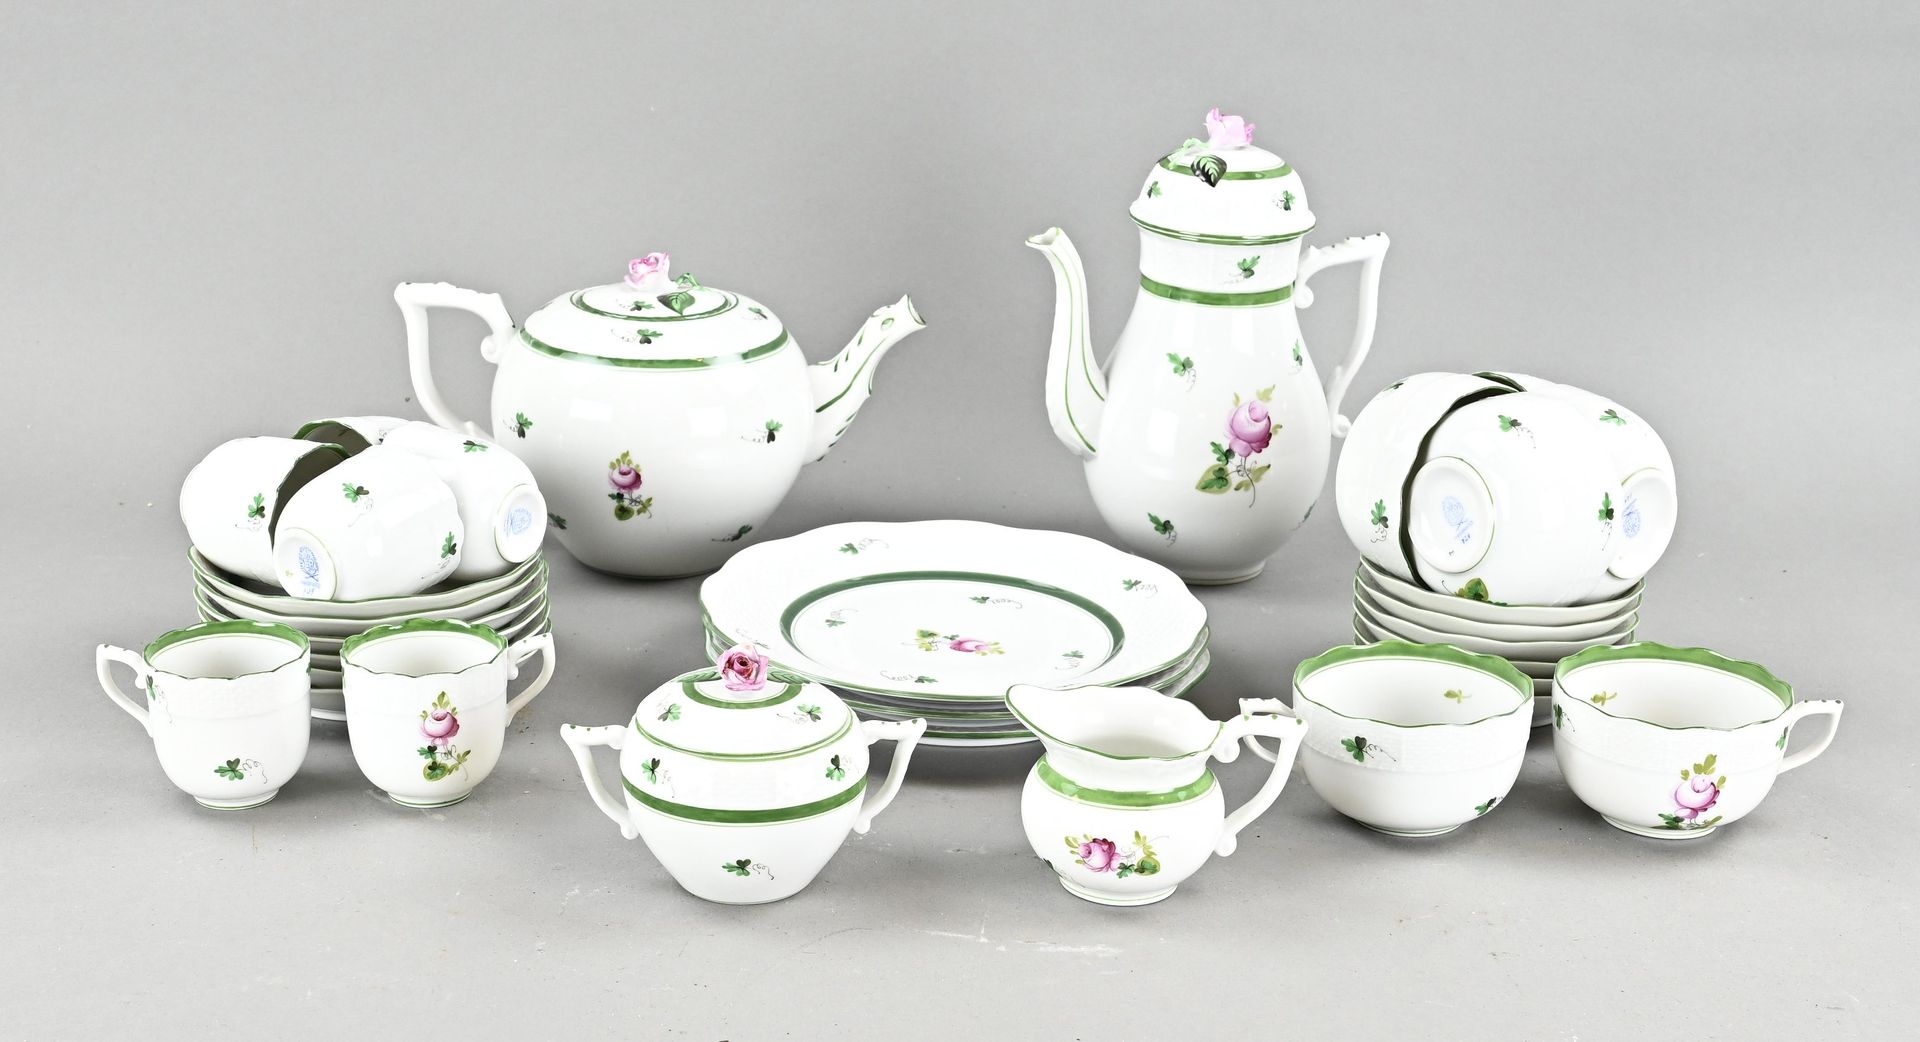 陶瓷Herend 茶具+ 摩卡餐具。包括六个茶杯和茶托。六个茶杯和茶托